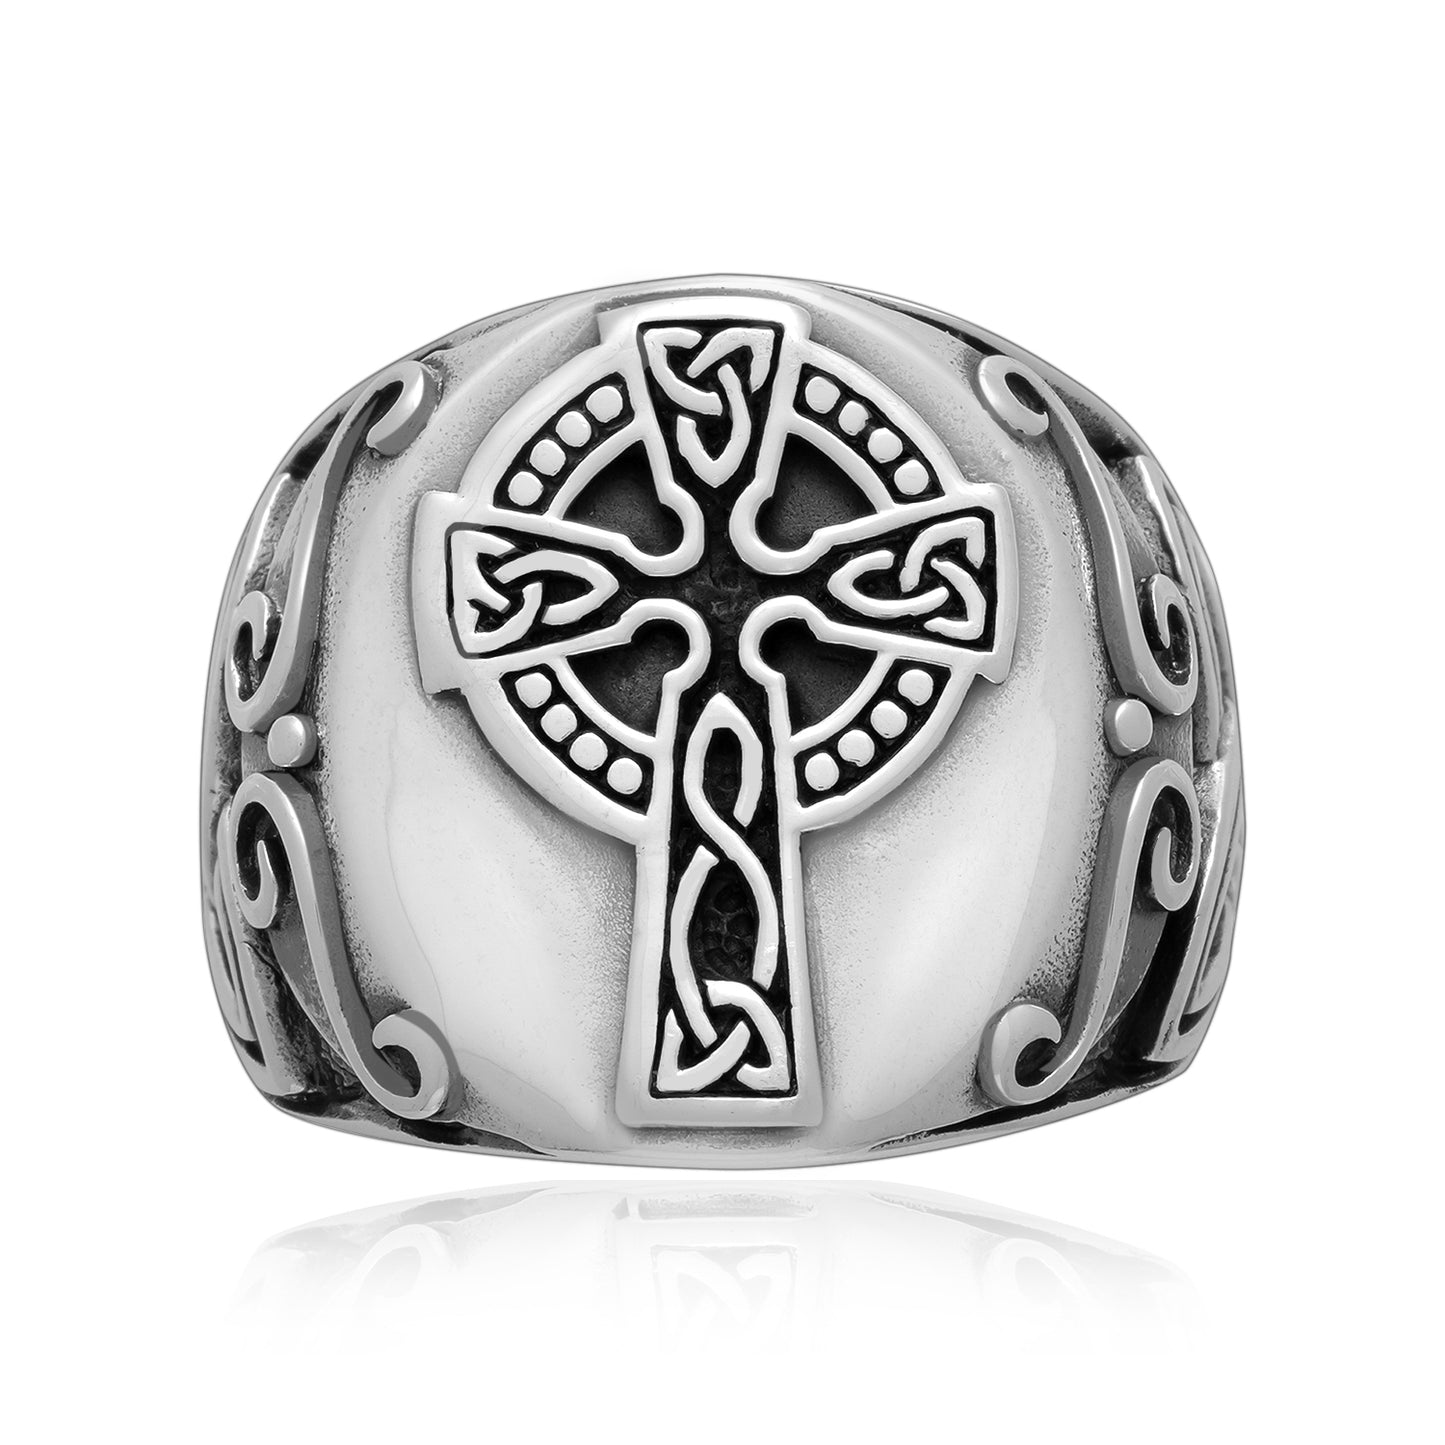 925 Sterling Silver Celtic Cross Ring